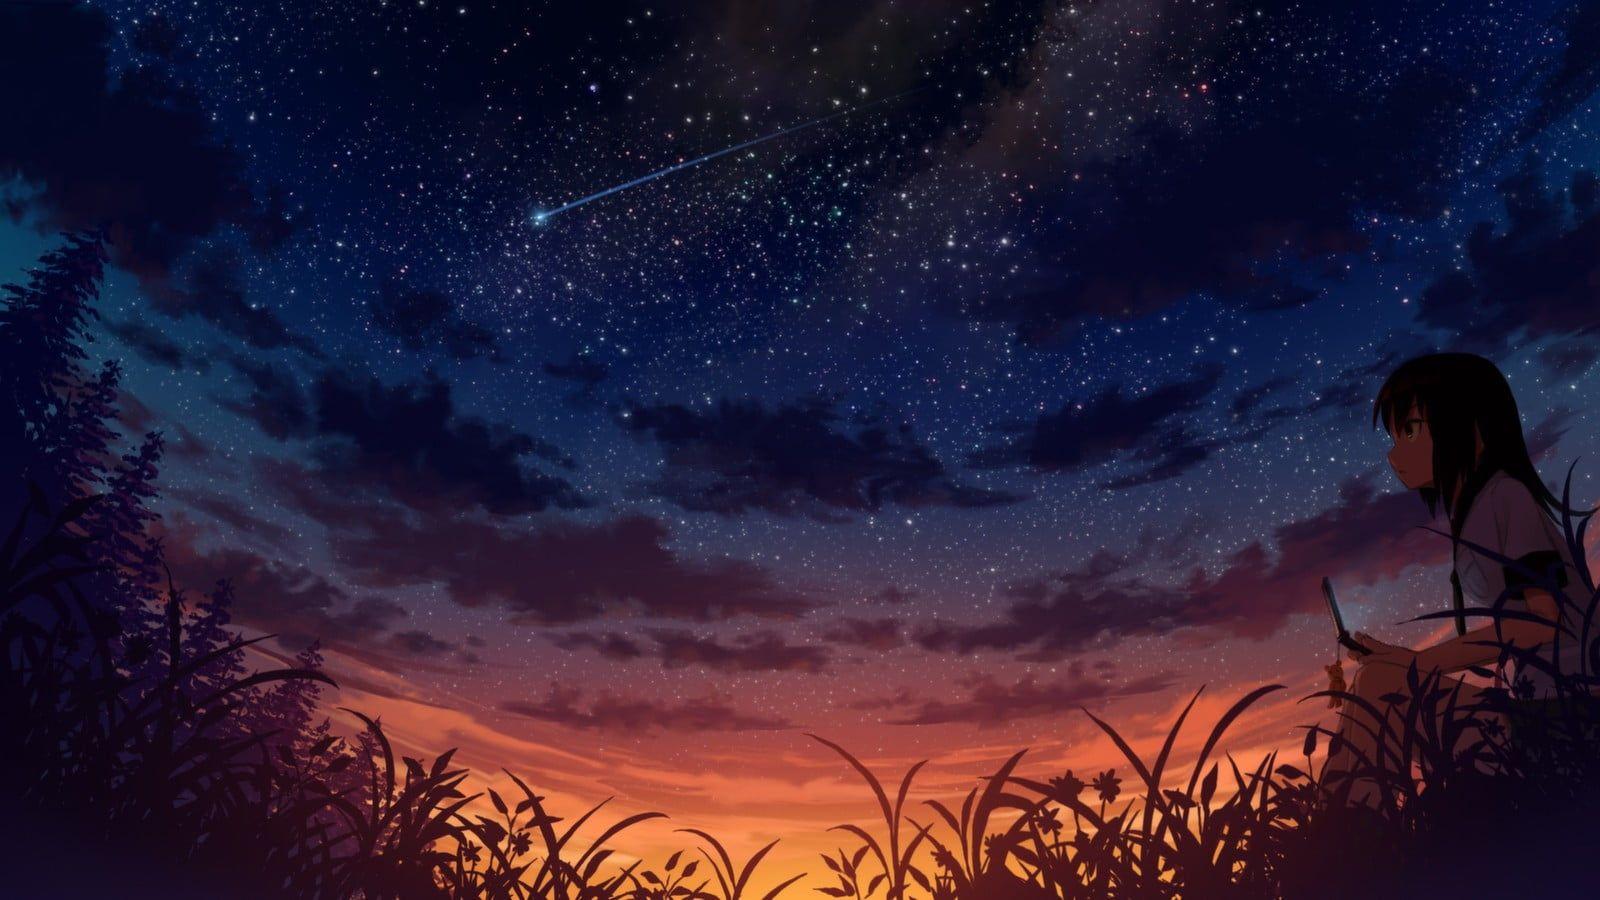 Với hình nền Anime miễn phí có các ngôi sao lung linh trên nền trời đầy sắc màu, bạn sẽ không bao giờ phải lo lắng về hình ảnh nghèo nàn trên màn hình của mình nữa. Tải về ngay để tận hưởng những khoảnh khắc phiêu lưu và tuyệt vời này.